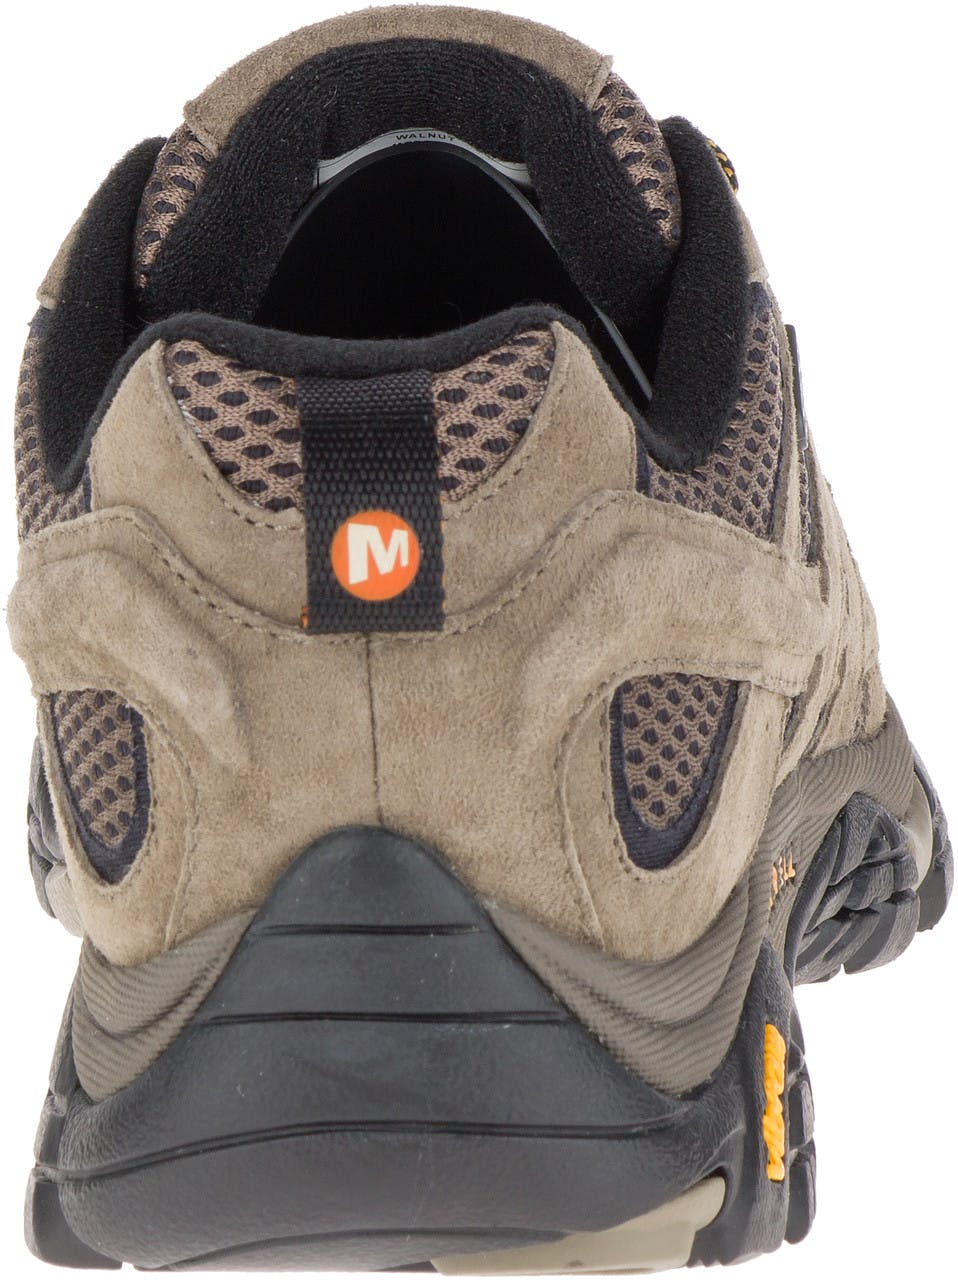 Moab 2 Waterproof Light Trail Shoes Walnut+